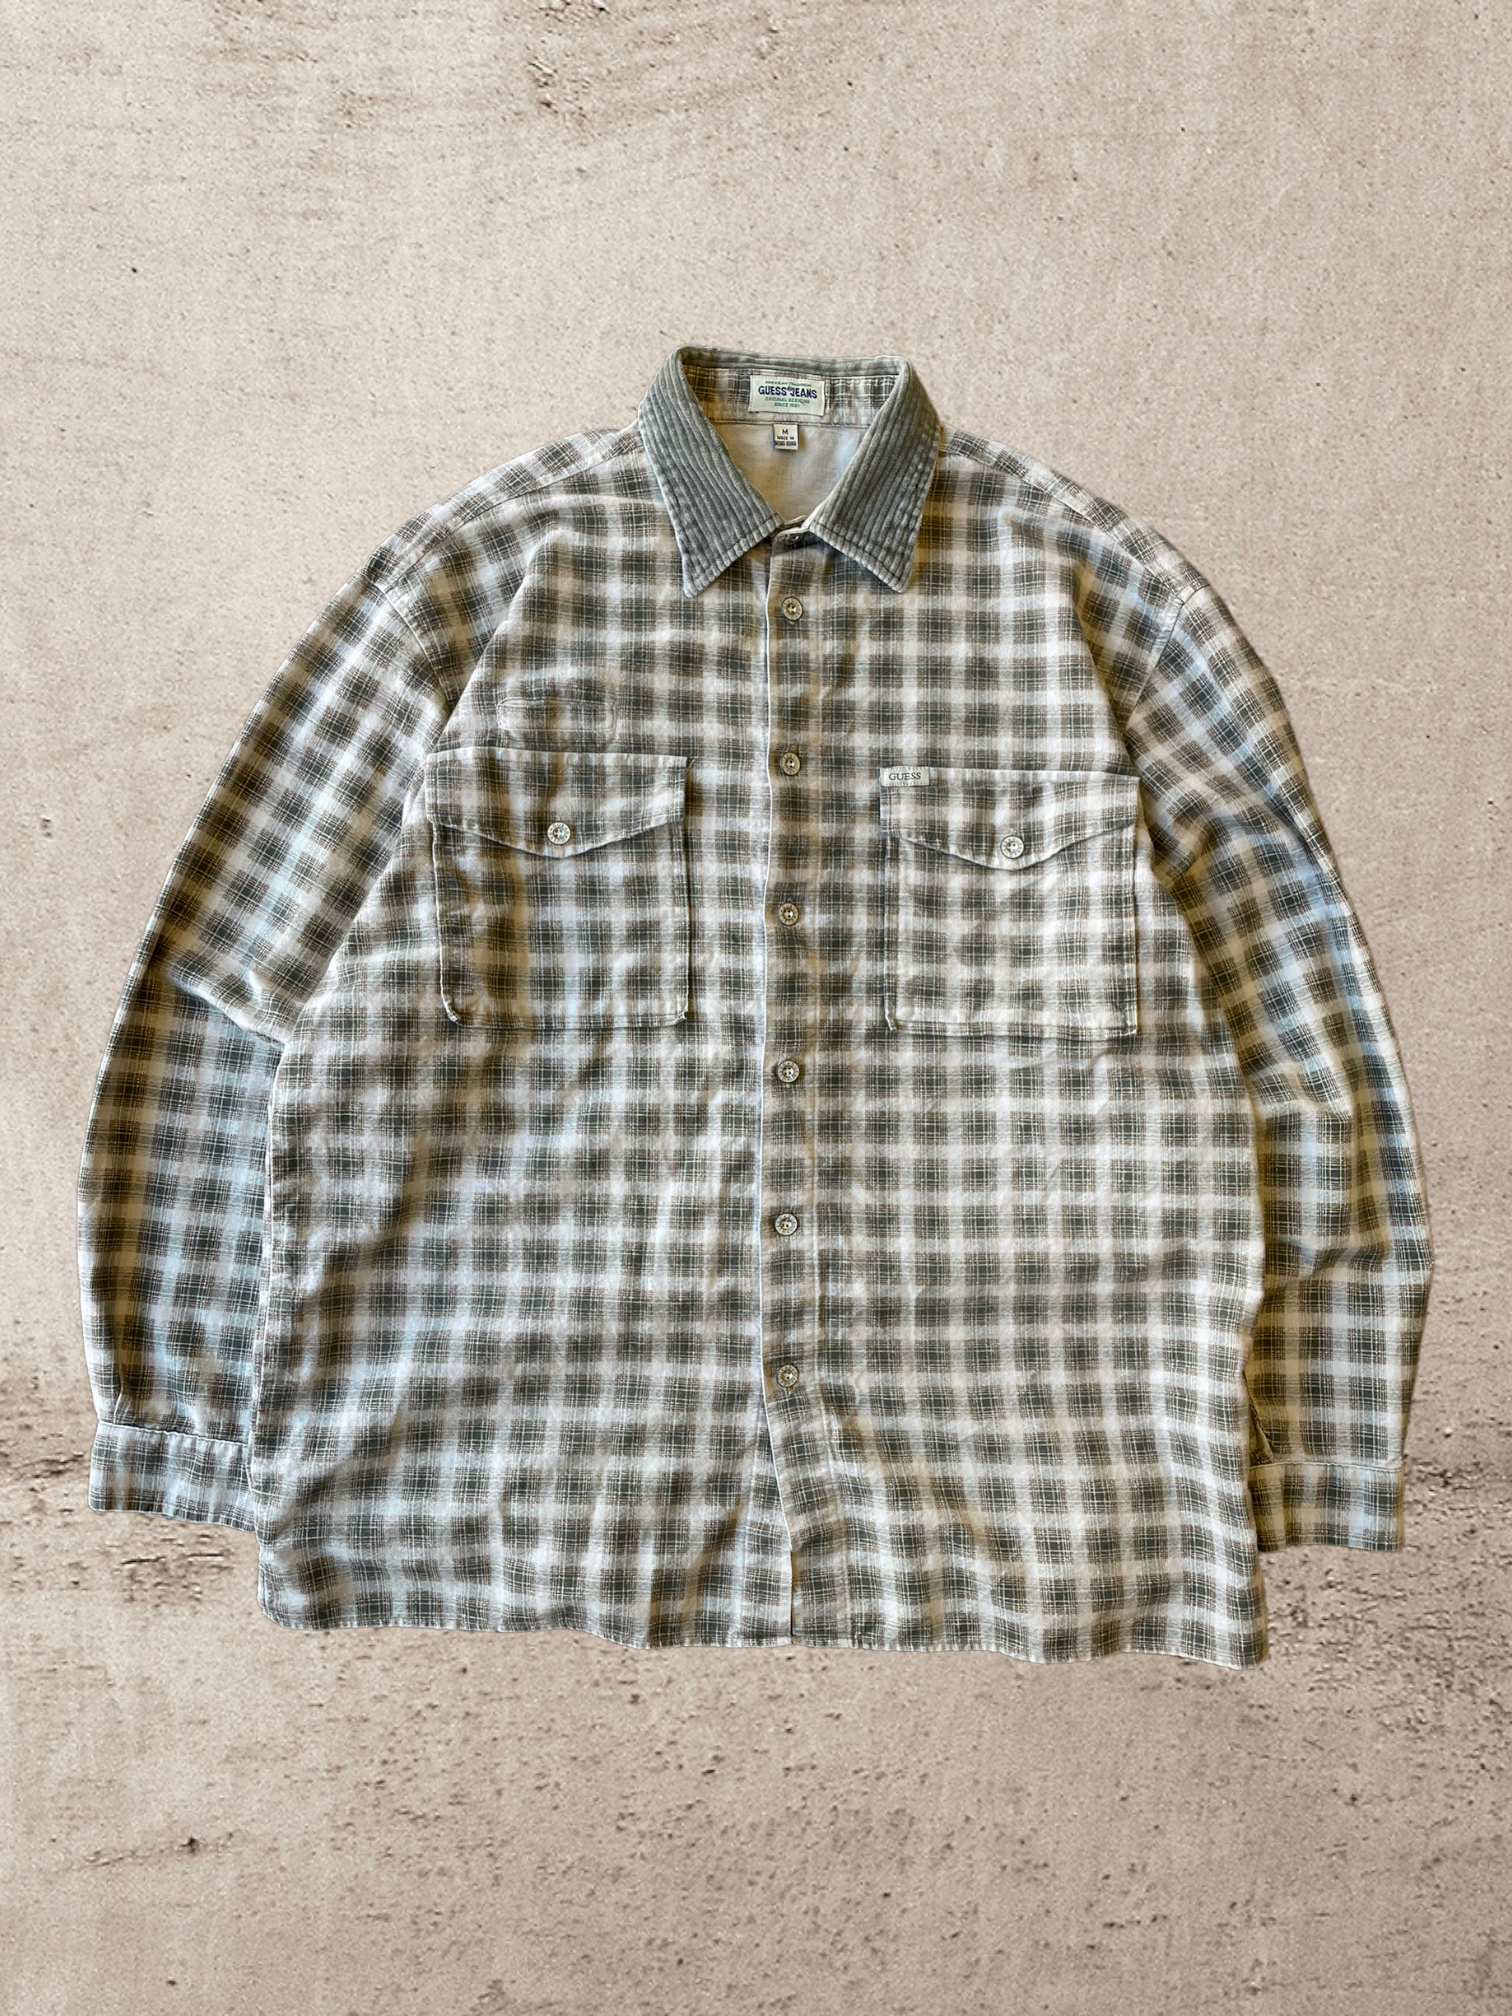 Vintage Guess Plaid Flannel Button up - Large